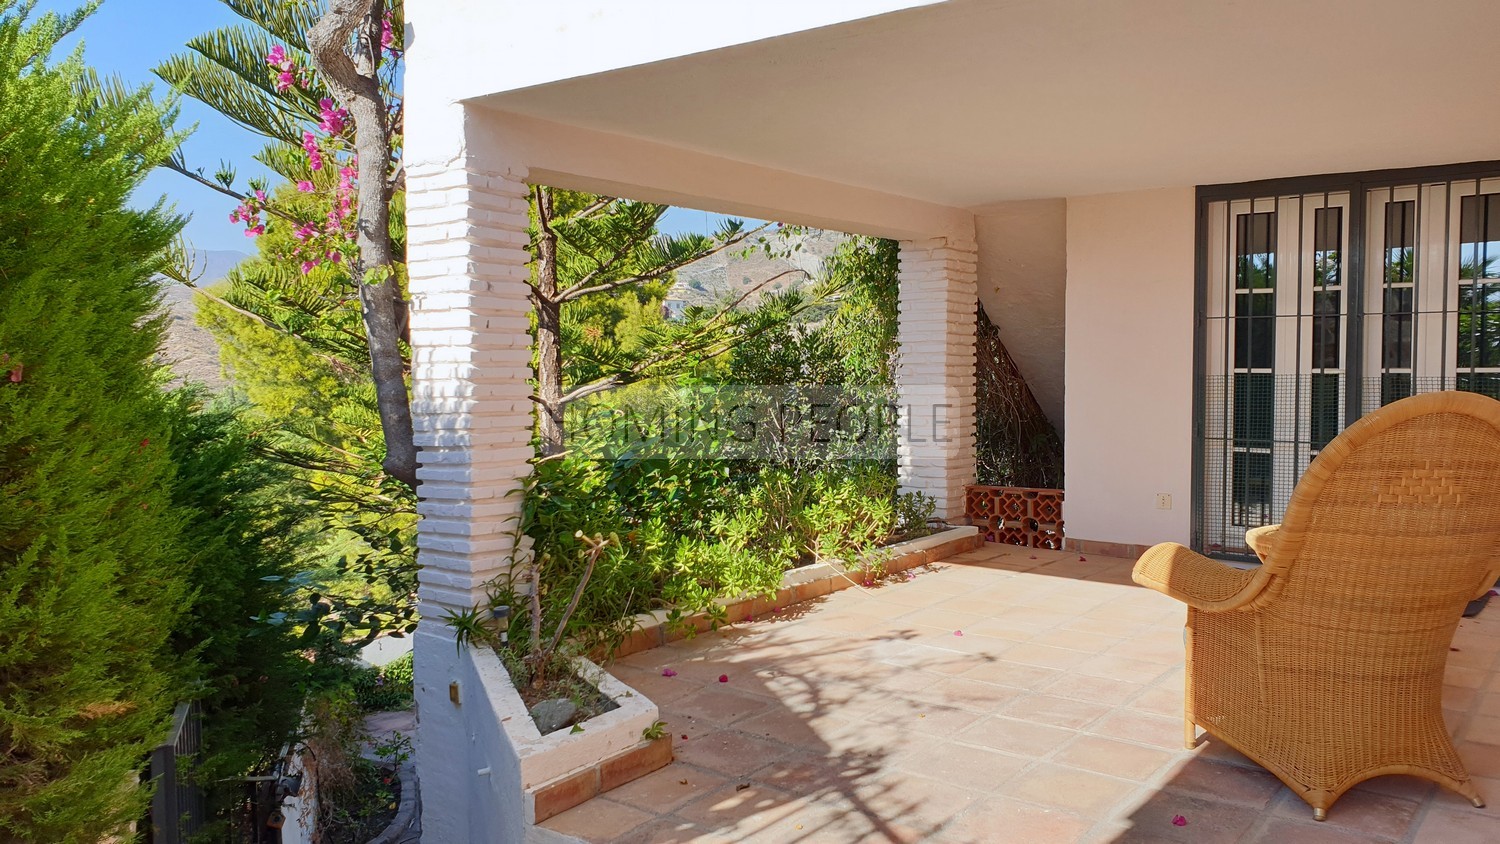 Villa de estilo andaluz con encanto: Vegetación, terrazas, piscina y unas vistas maravillosas a la bahía !